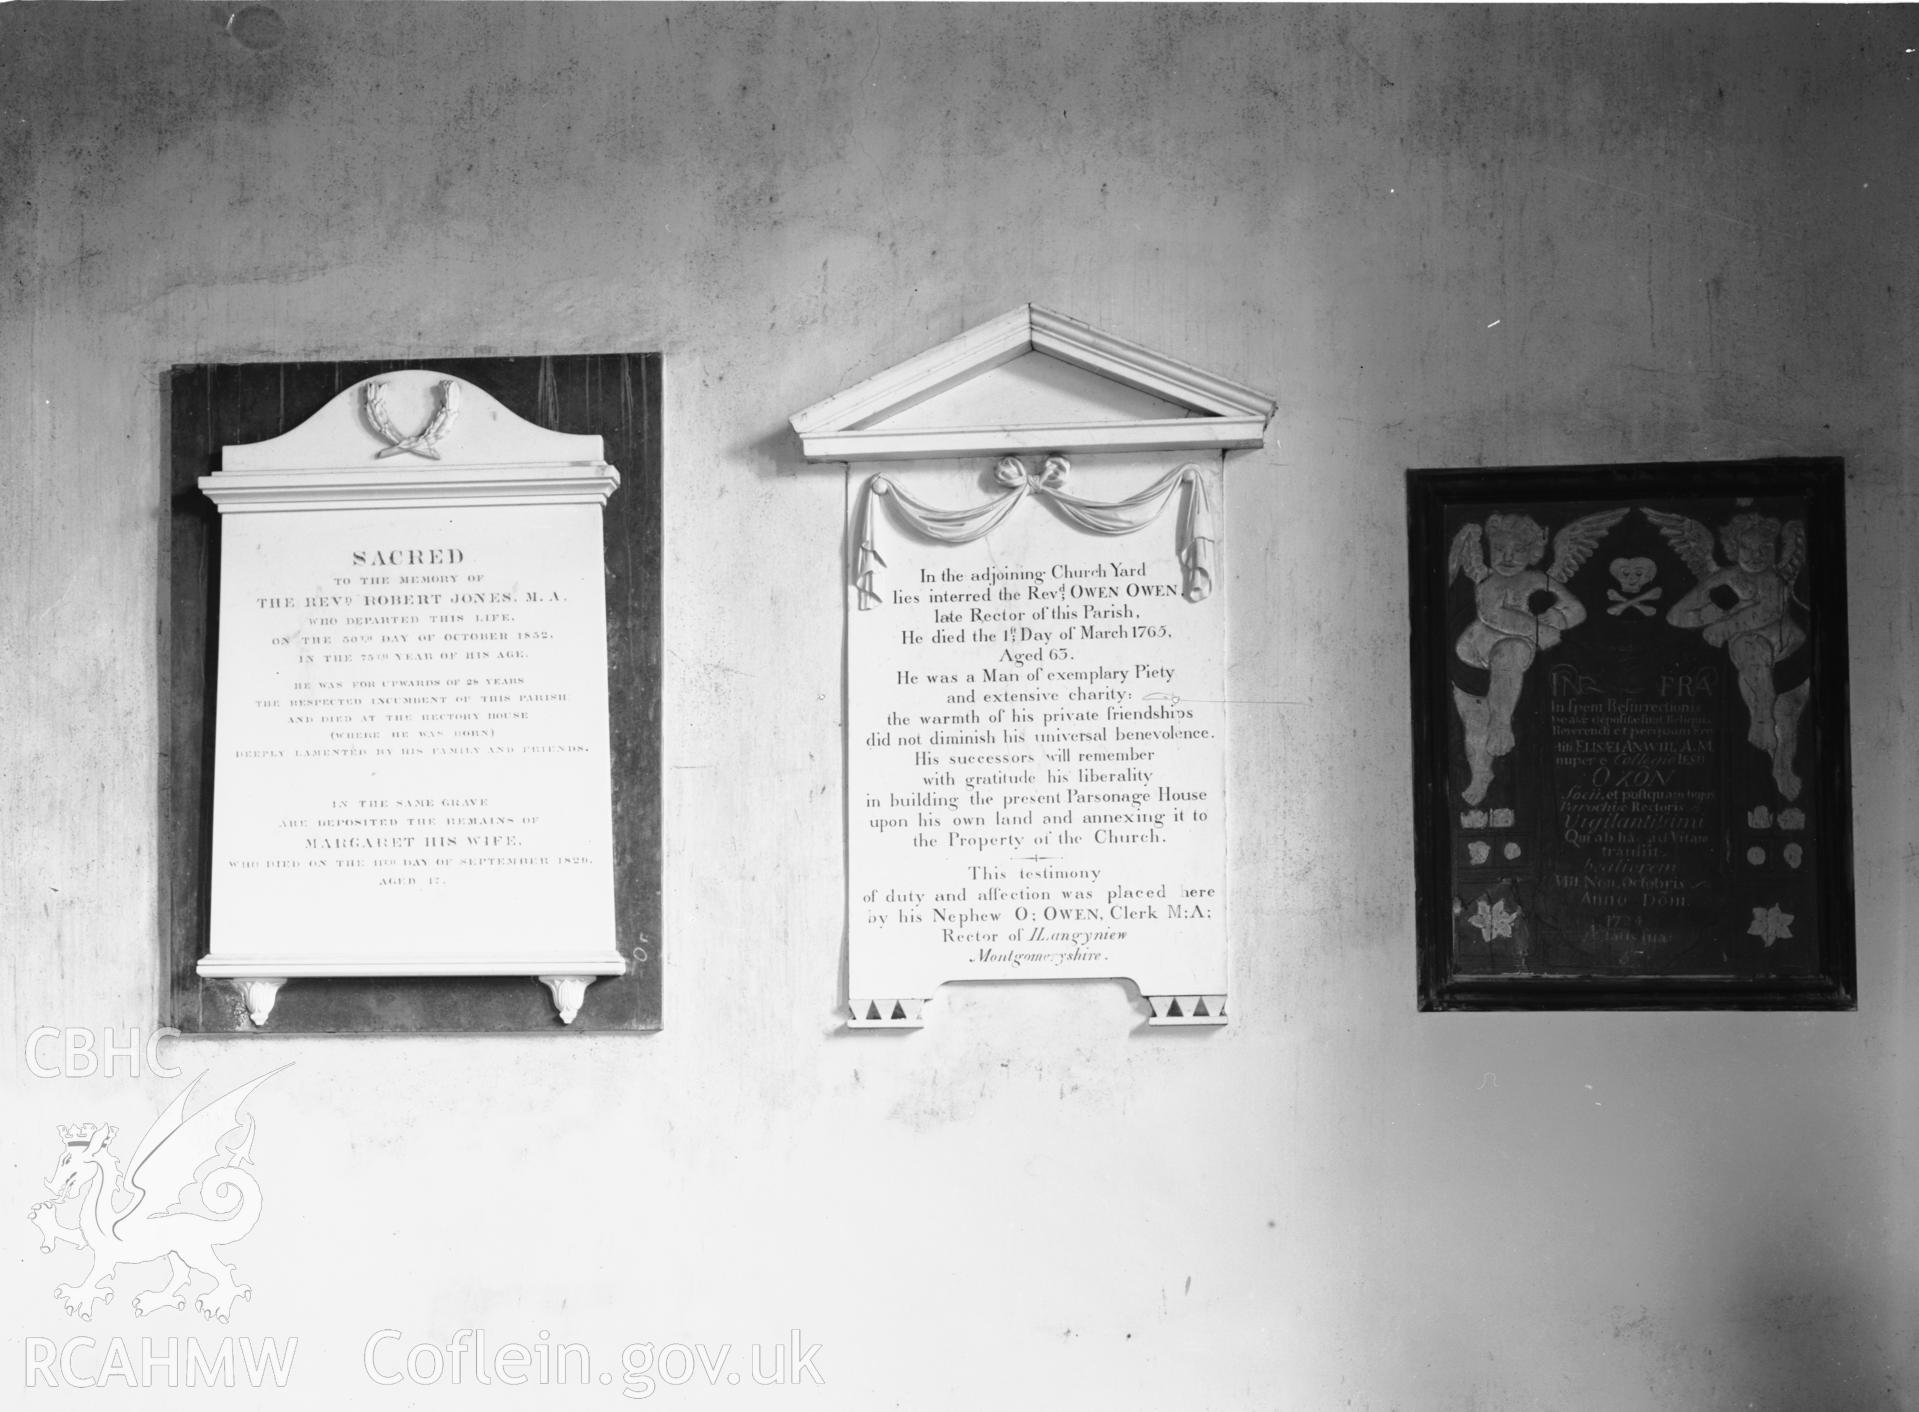 Interior view showing memorials to Robert Jones and Owen Jones.